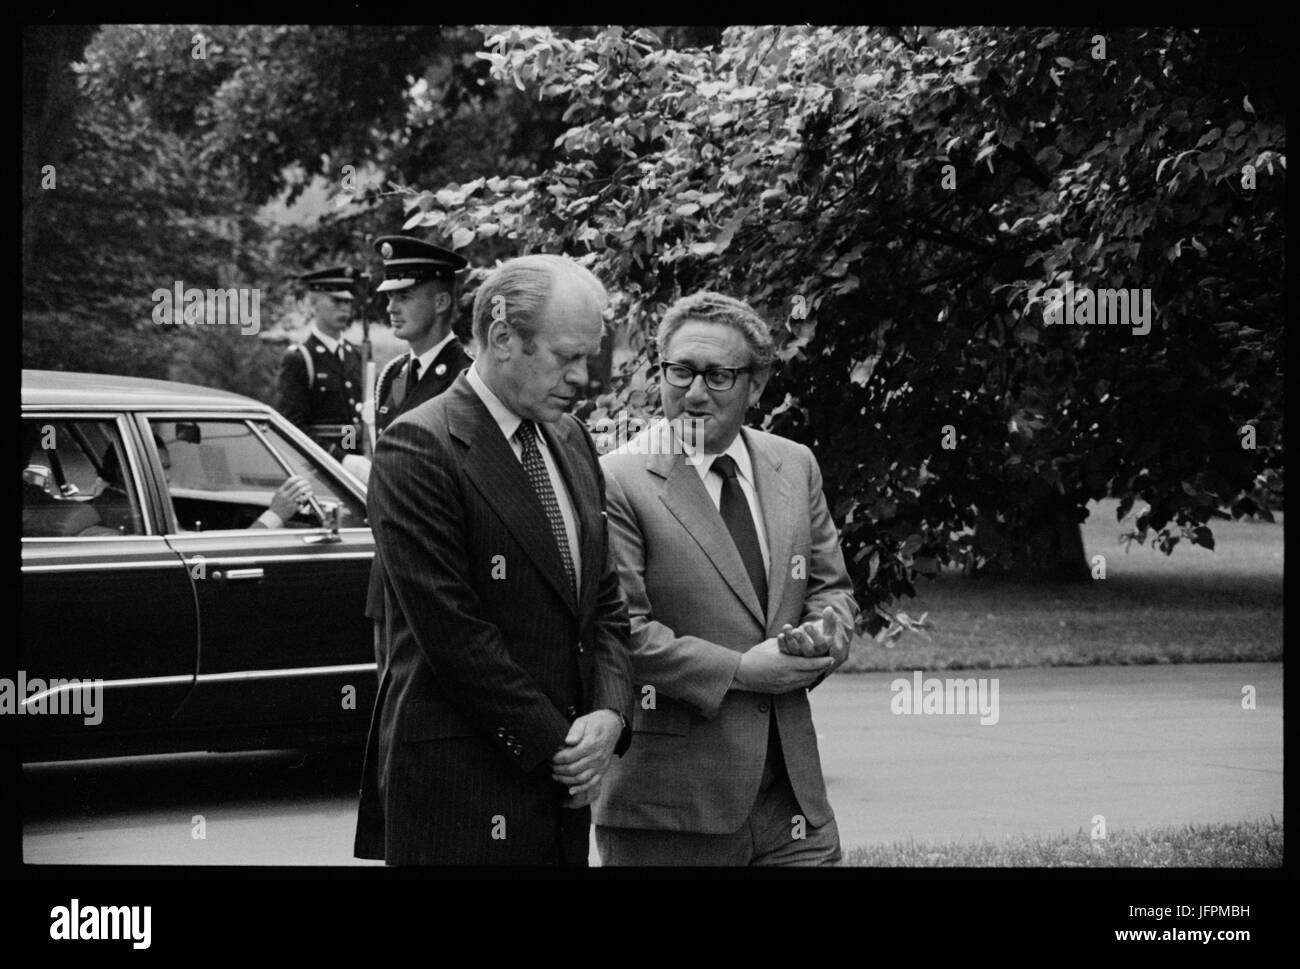 Presidente Gerald Ford e dal segretario di Stato Henry Kissinger, conversando, sui terreni della Casa Bianca di Washington, D.C., Agosto 16, 1975. Foto di Thomas O'Halloran. Foto Stock